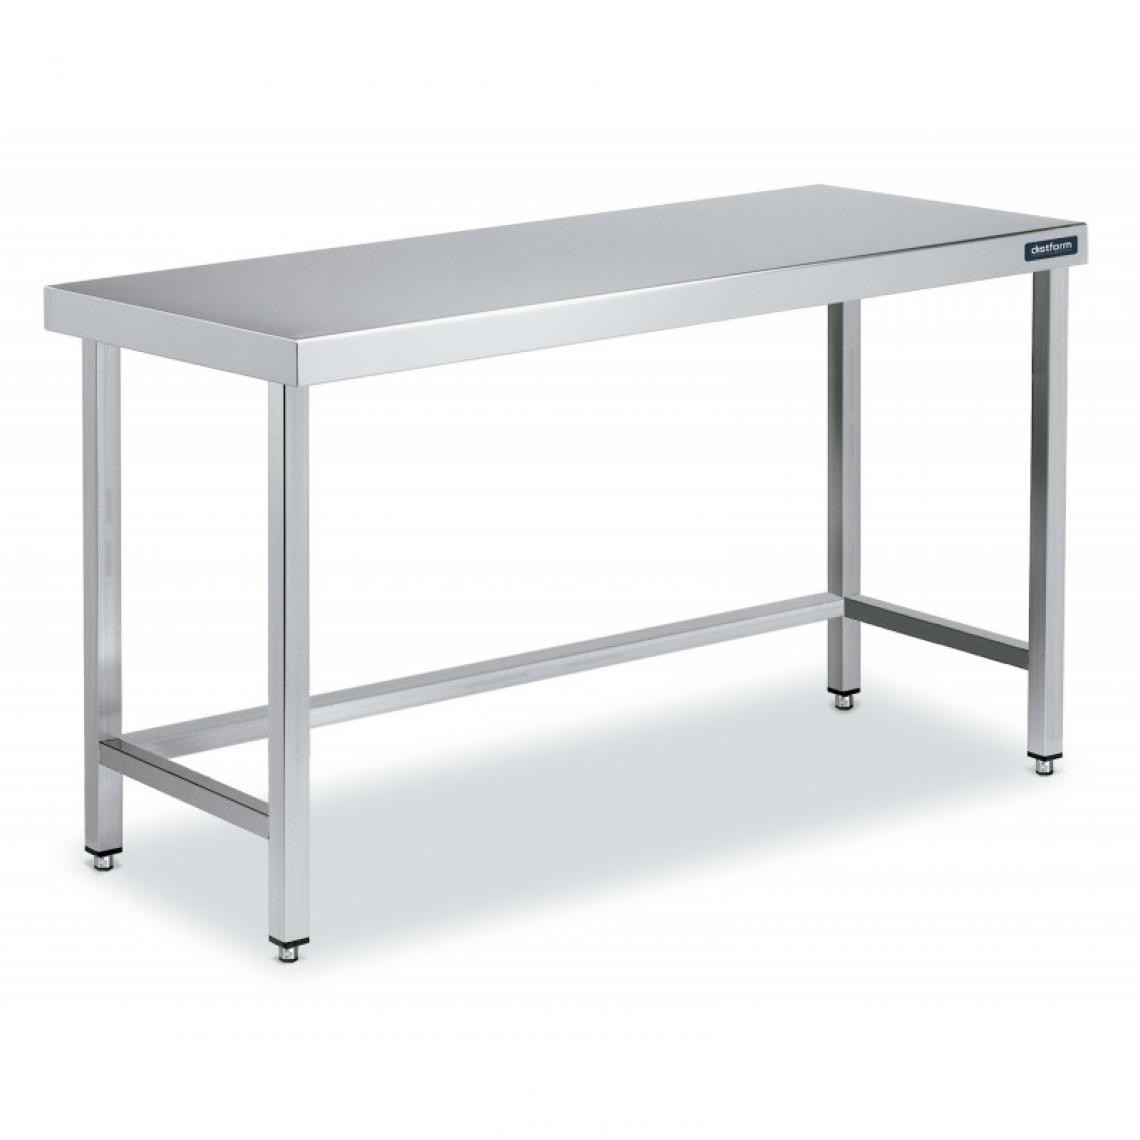 DISTFORM - Table Inox de Travail Centrale avec Renforts - Gamme 550 - Distform - Acier inoxydable1200x550 - Tables à manger